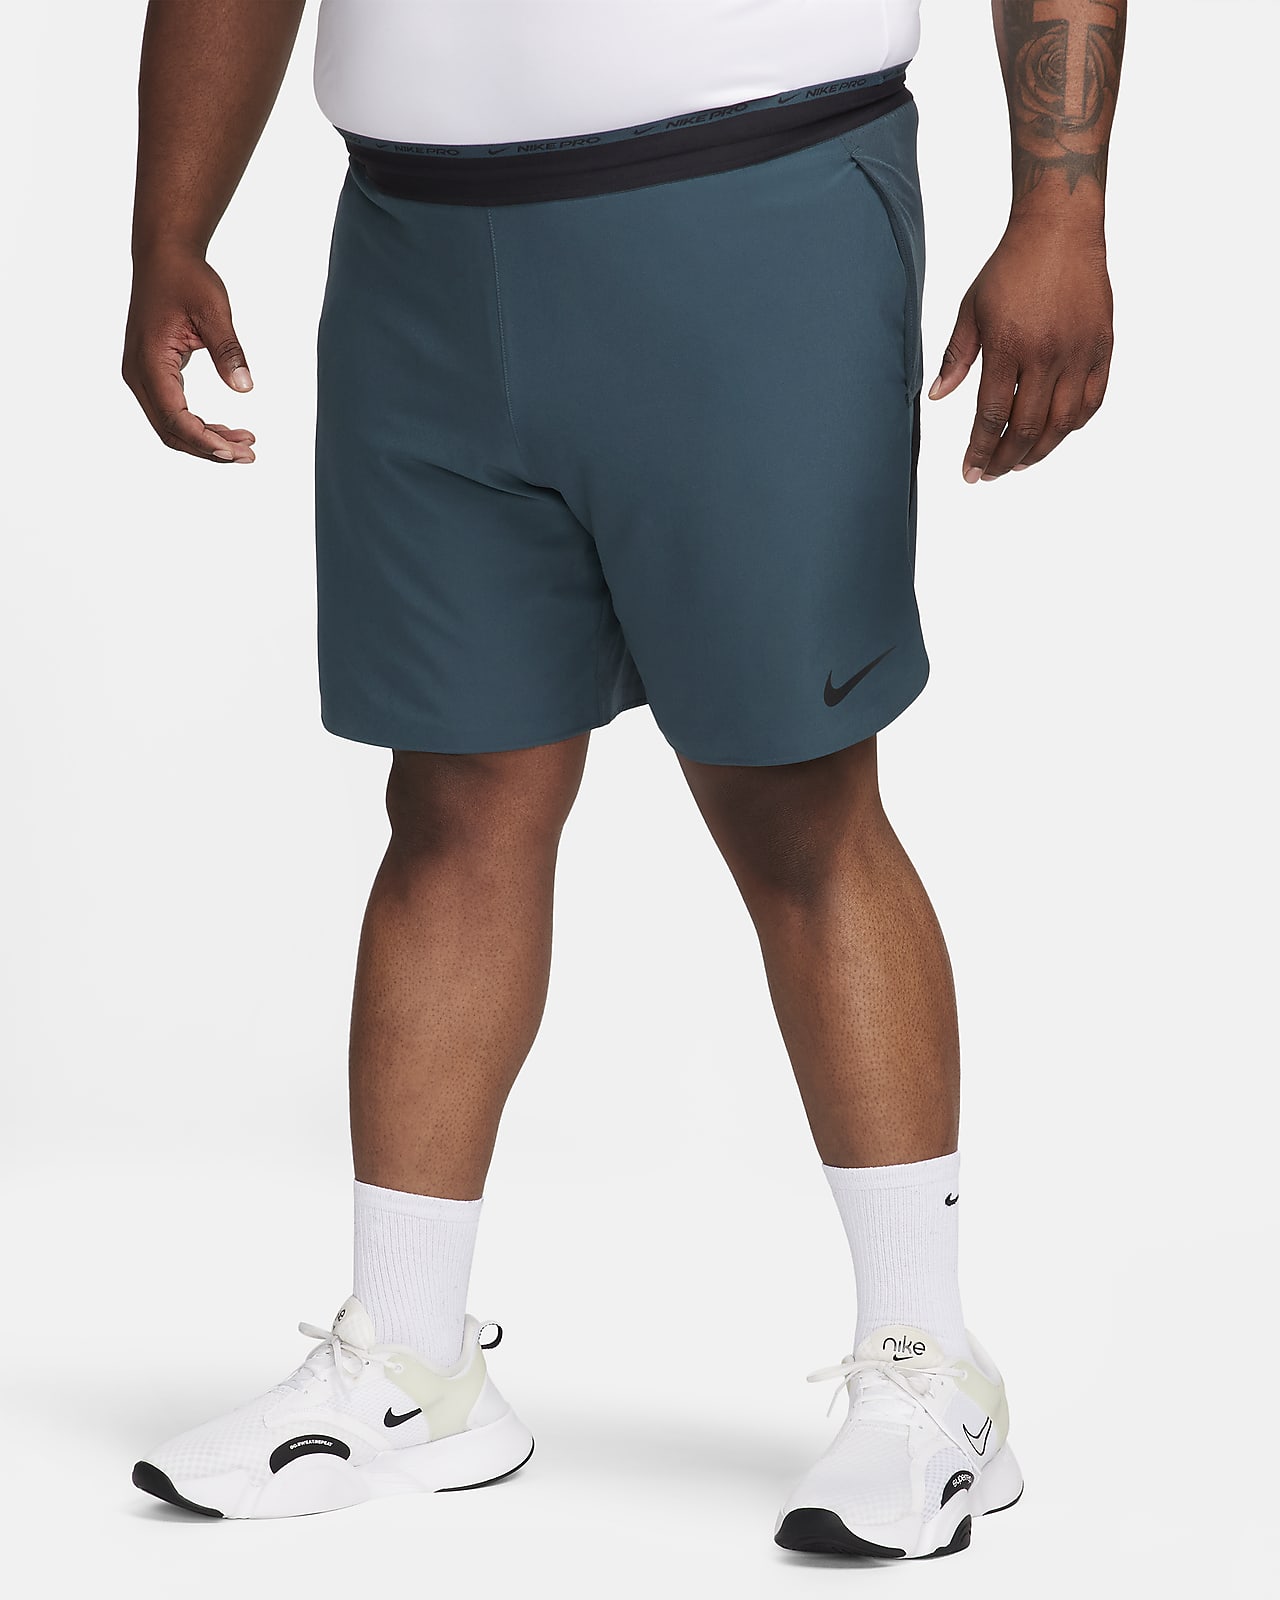 Nike Dri-FIT Flex Rep Pro Collection 20 cm-es, bélés nélküli férfi  edzőrövidnadrág